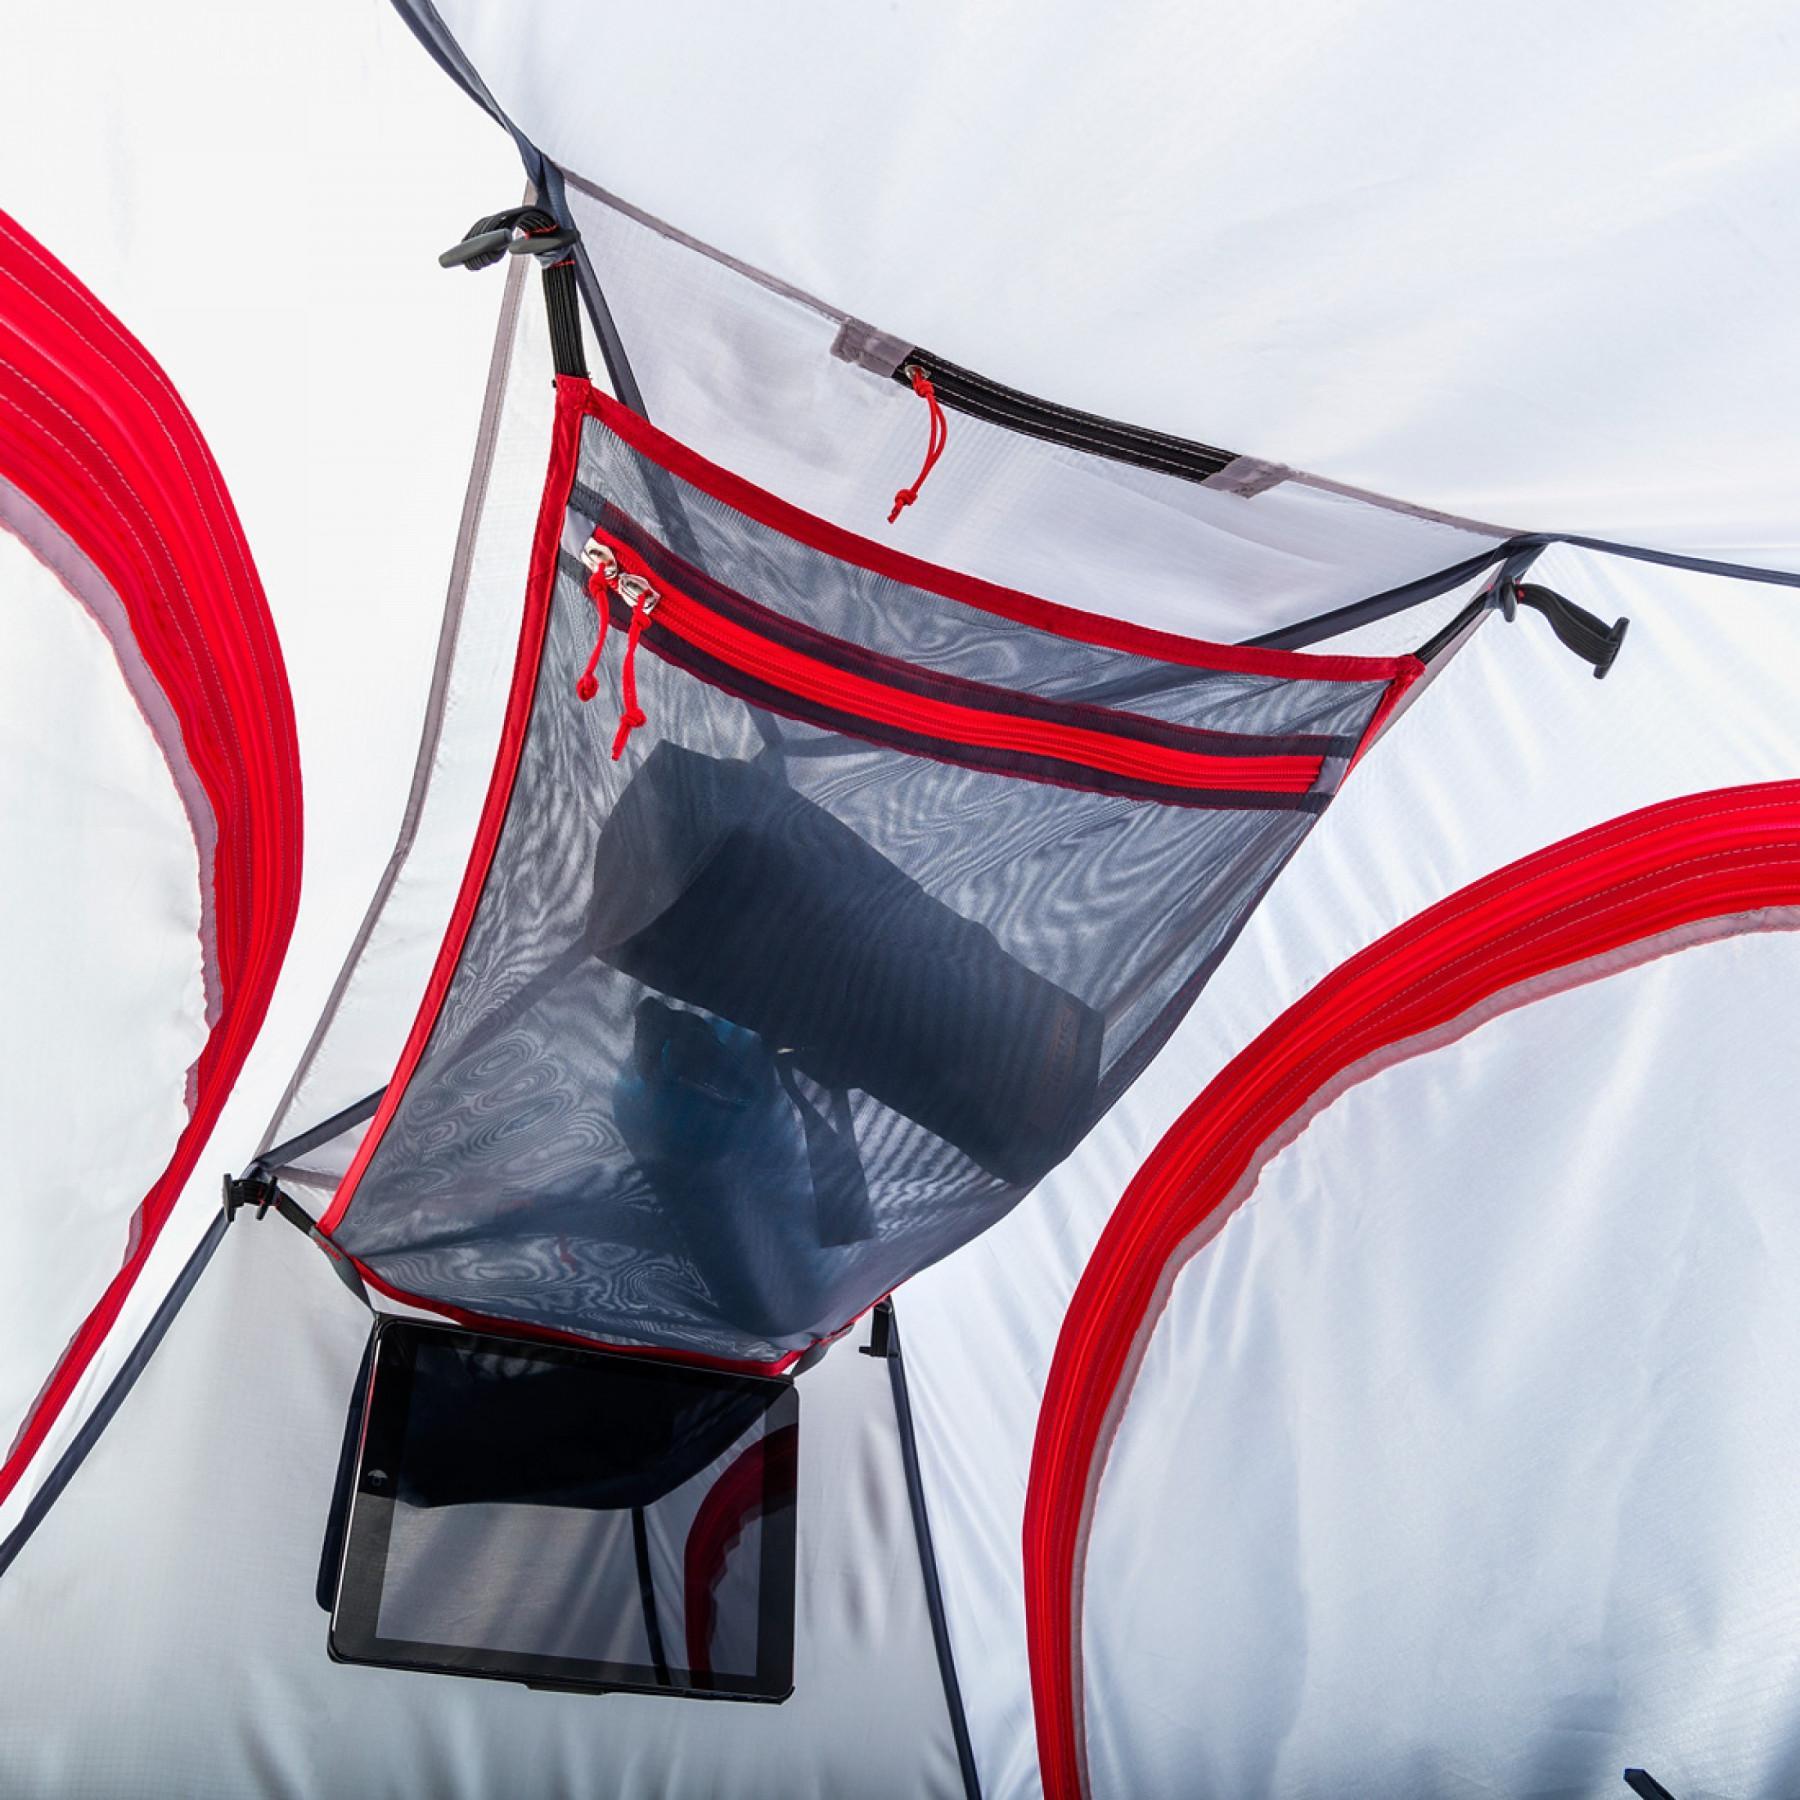 Tent roof storage net Ferrino